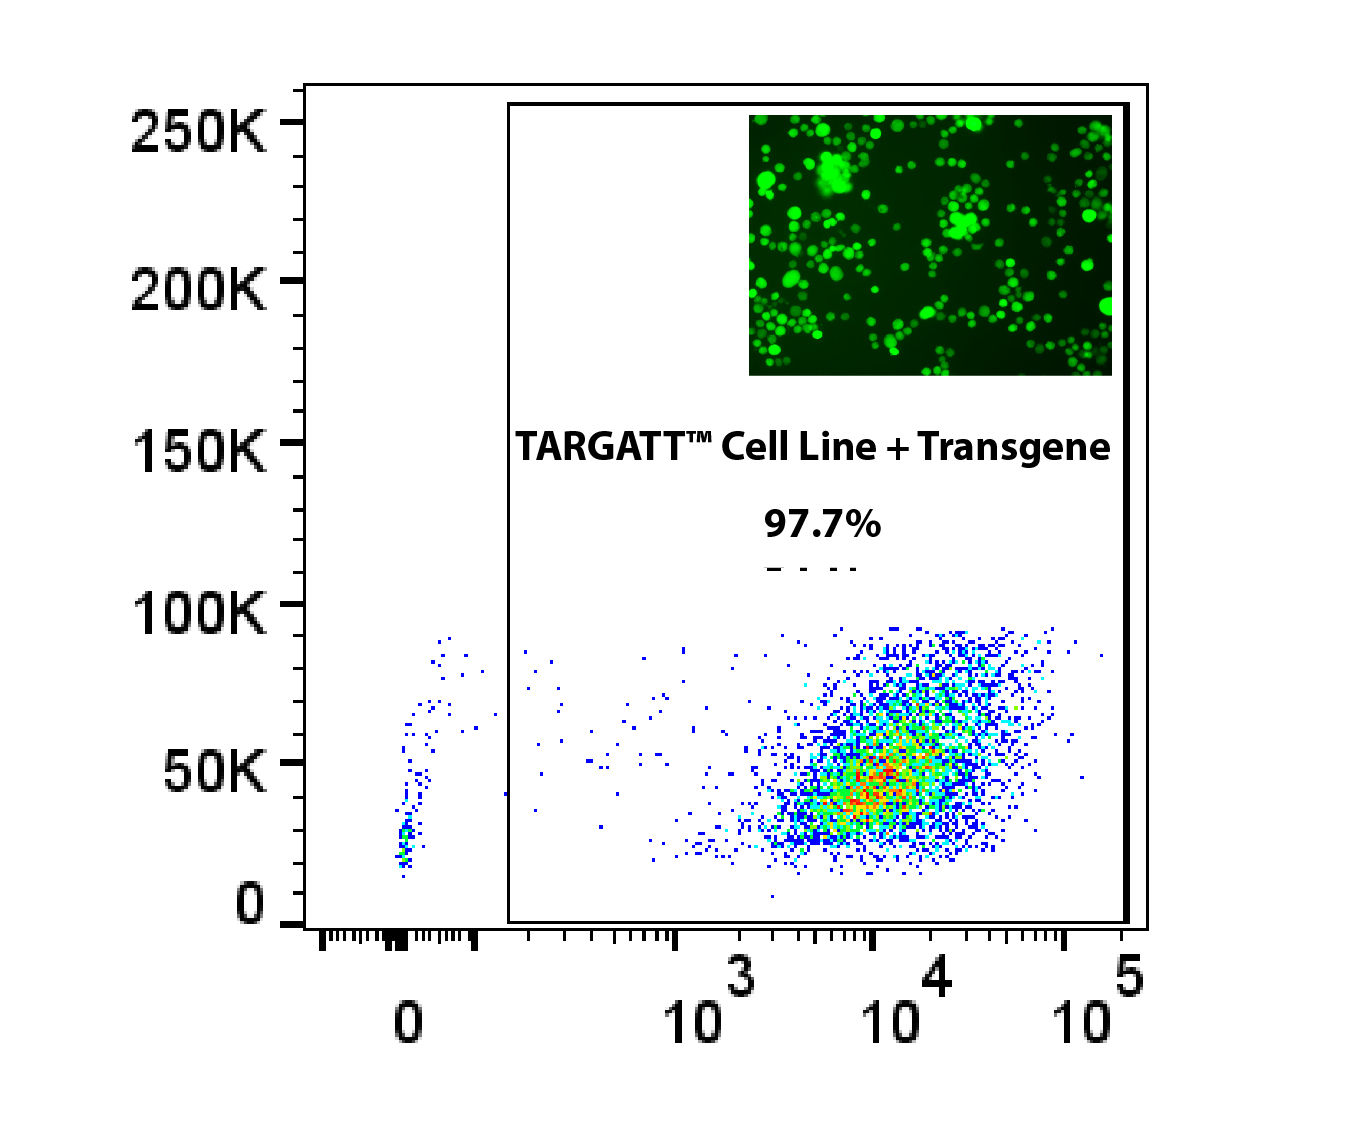 technical-targatt-cell-line-transgene-20181109